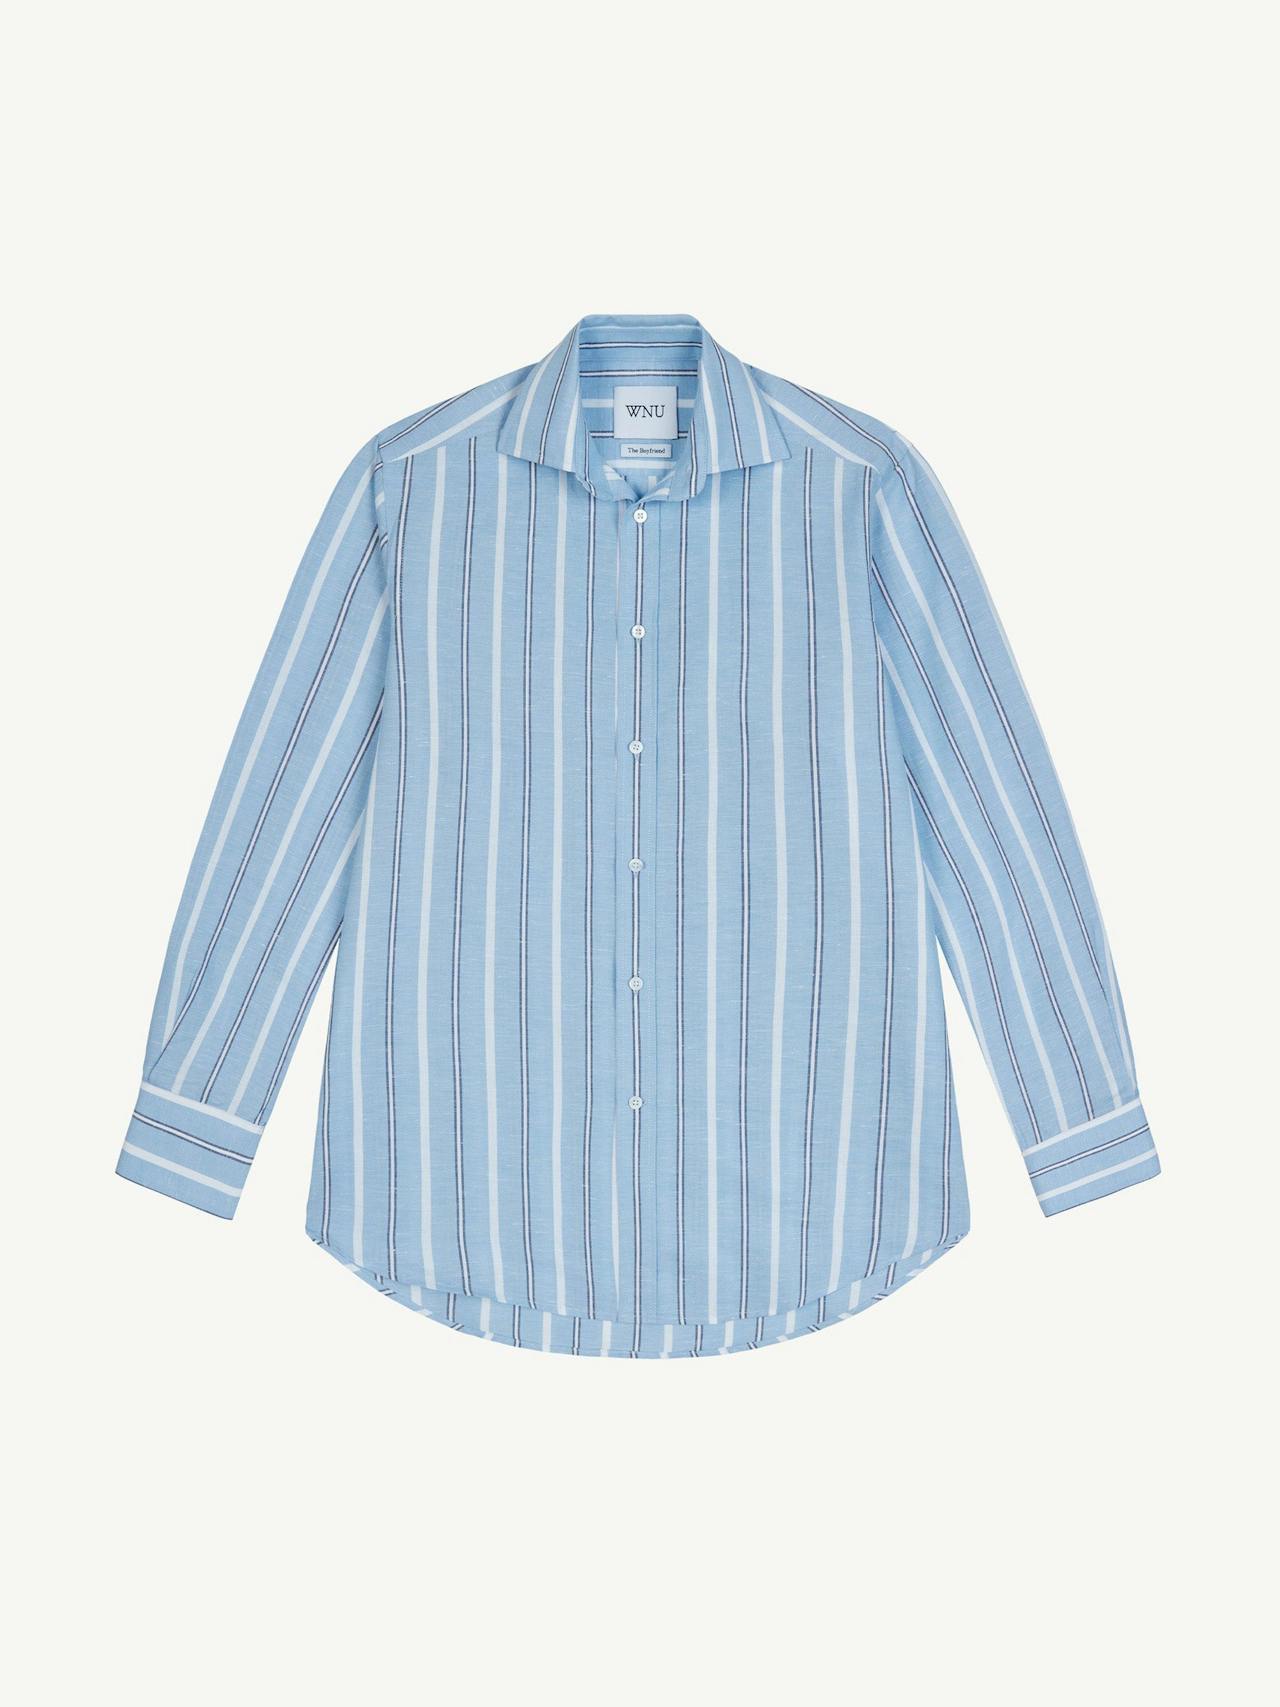 The Boyfriend weave blue multistripe shirt